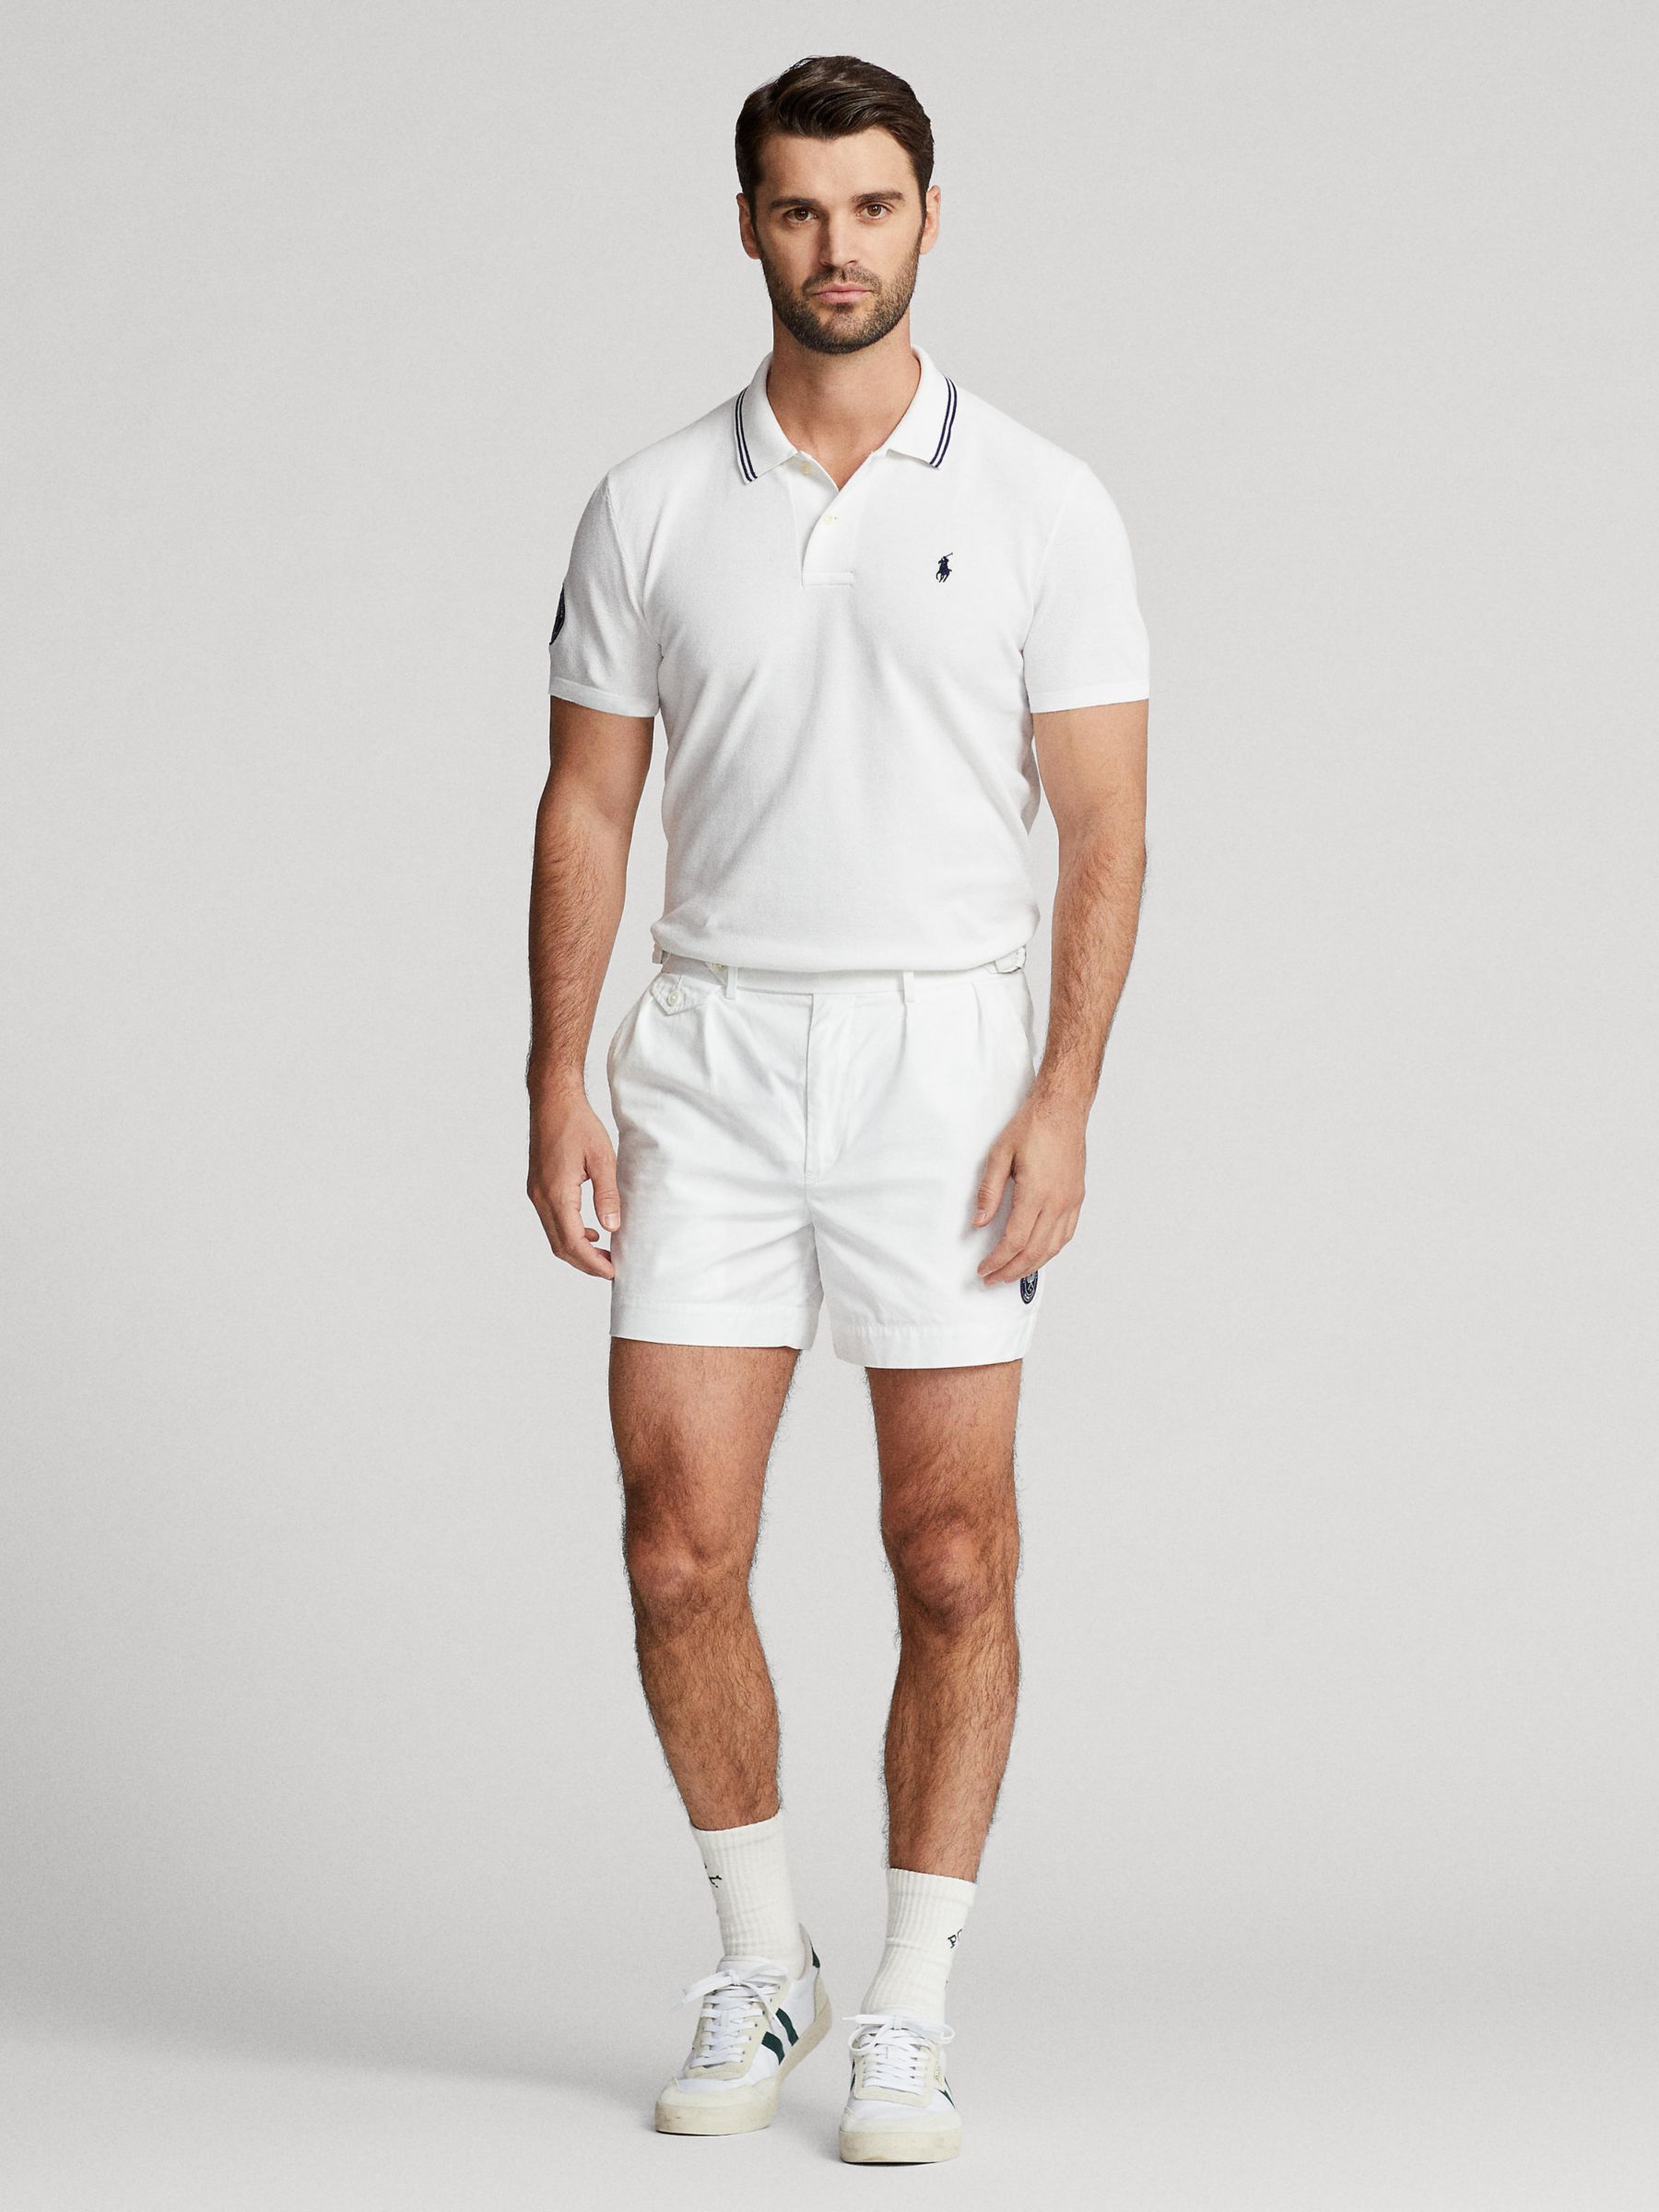 RLX Ralph Lauren X Wimbledon Tennis Player Polo Shirt in Green for Men